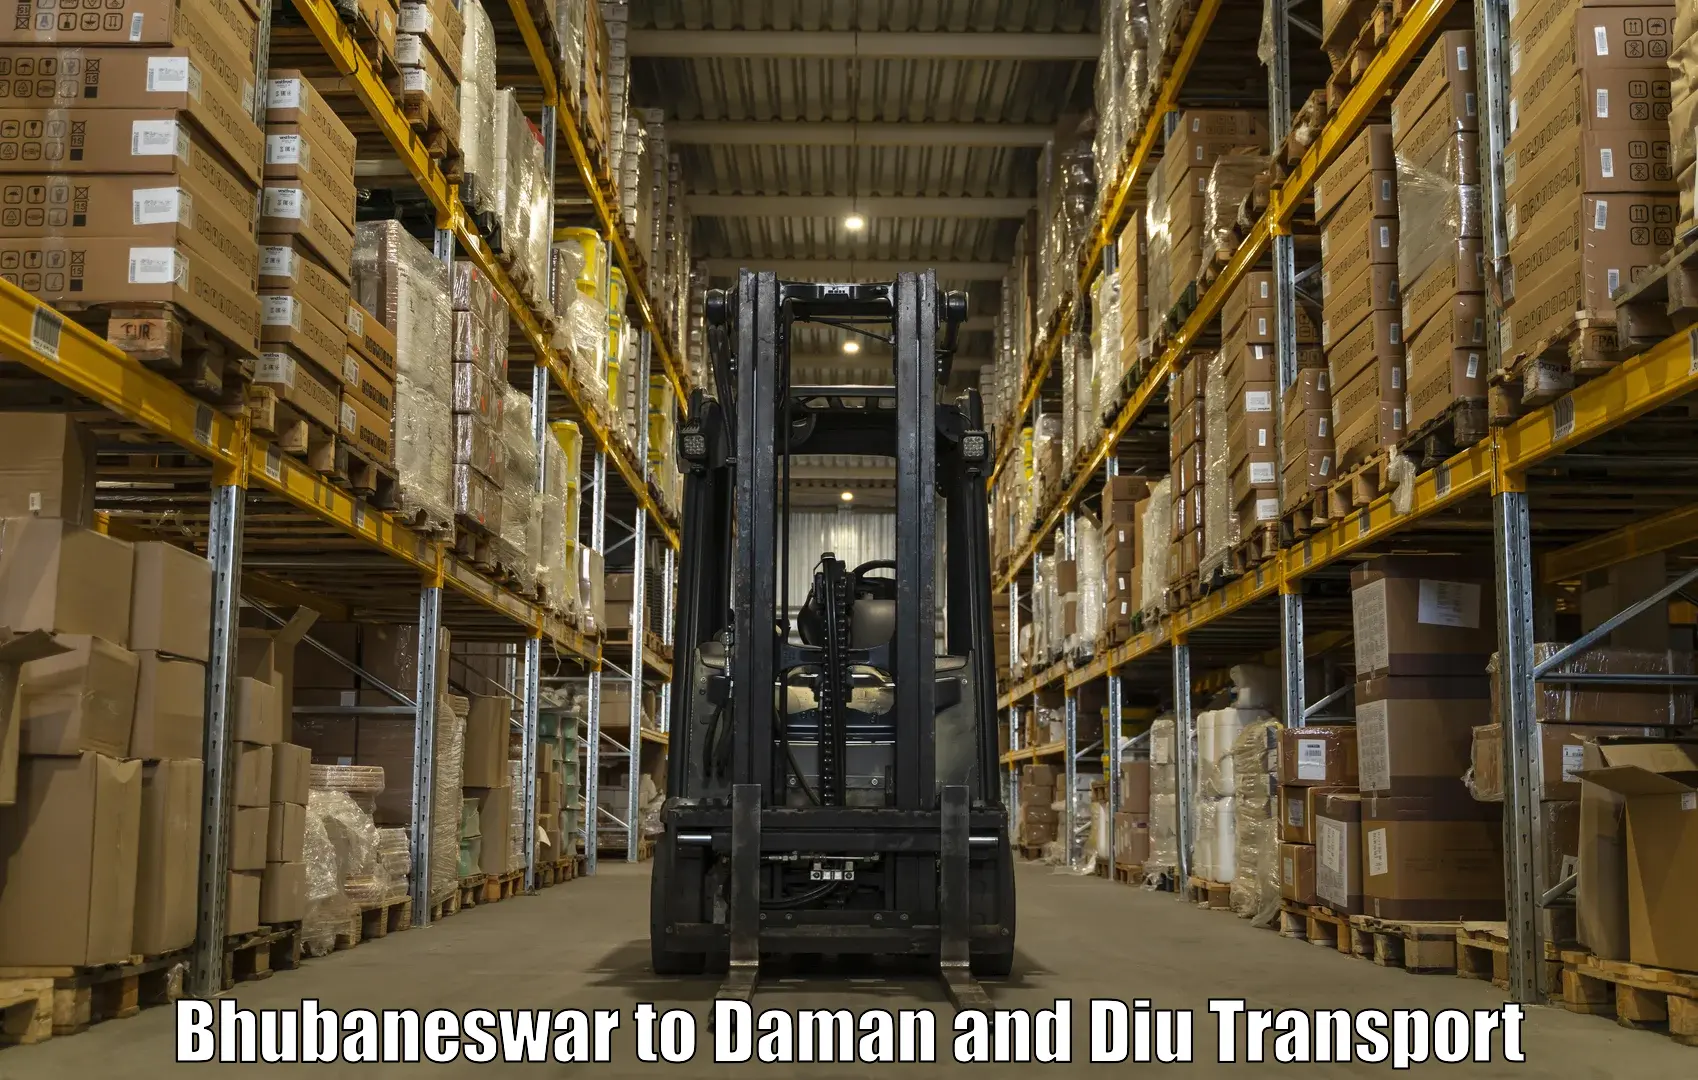 Furniture transport service Bhubaneswar to Diu